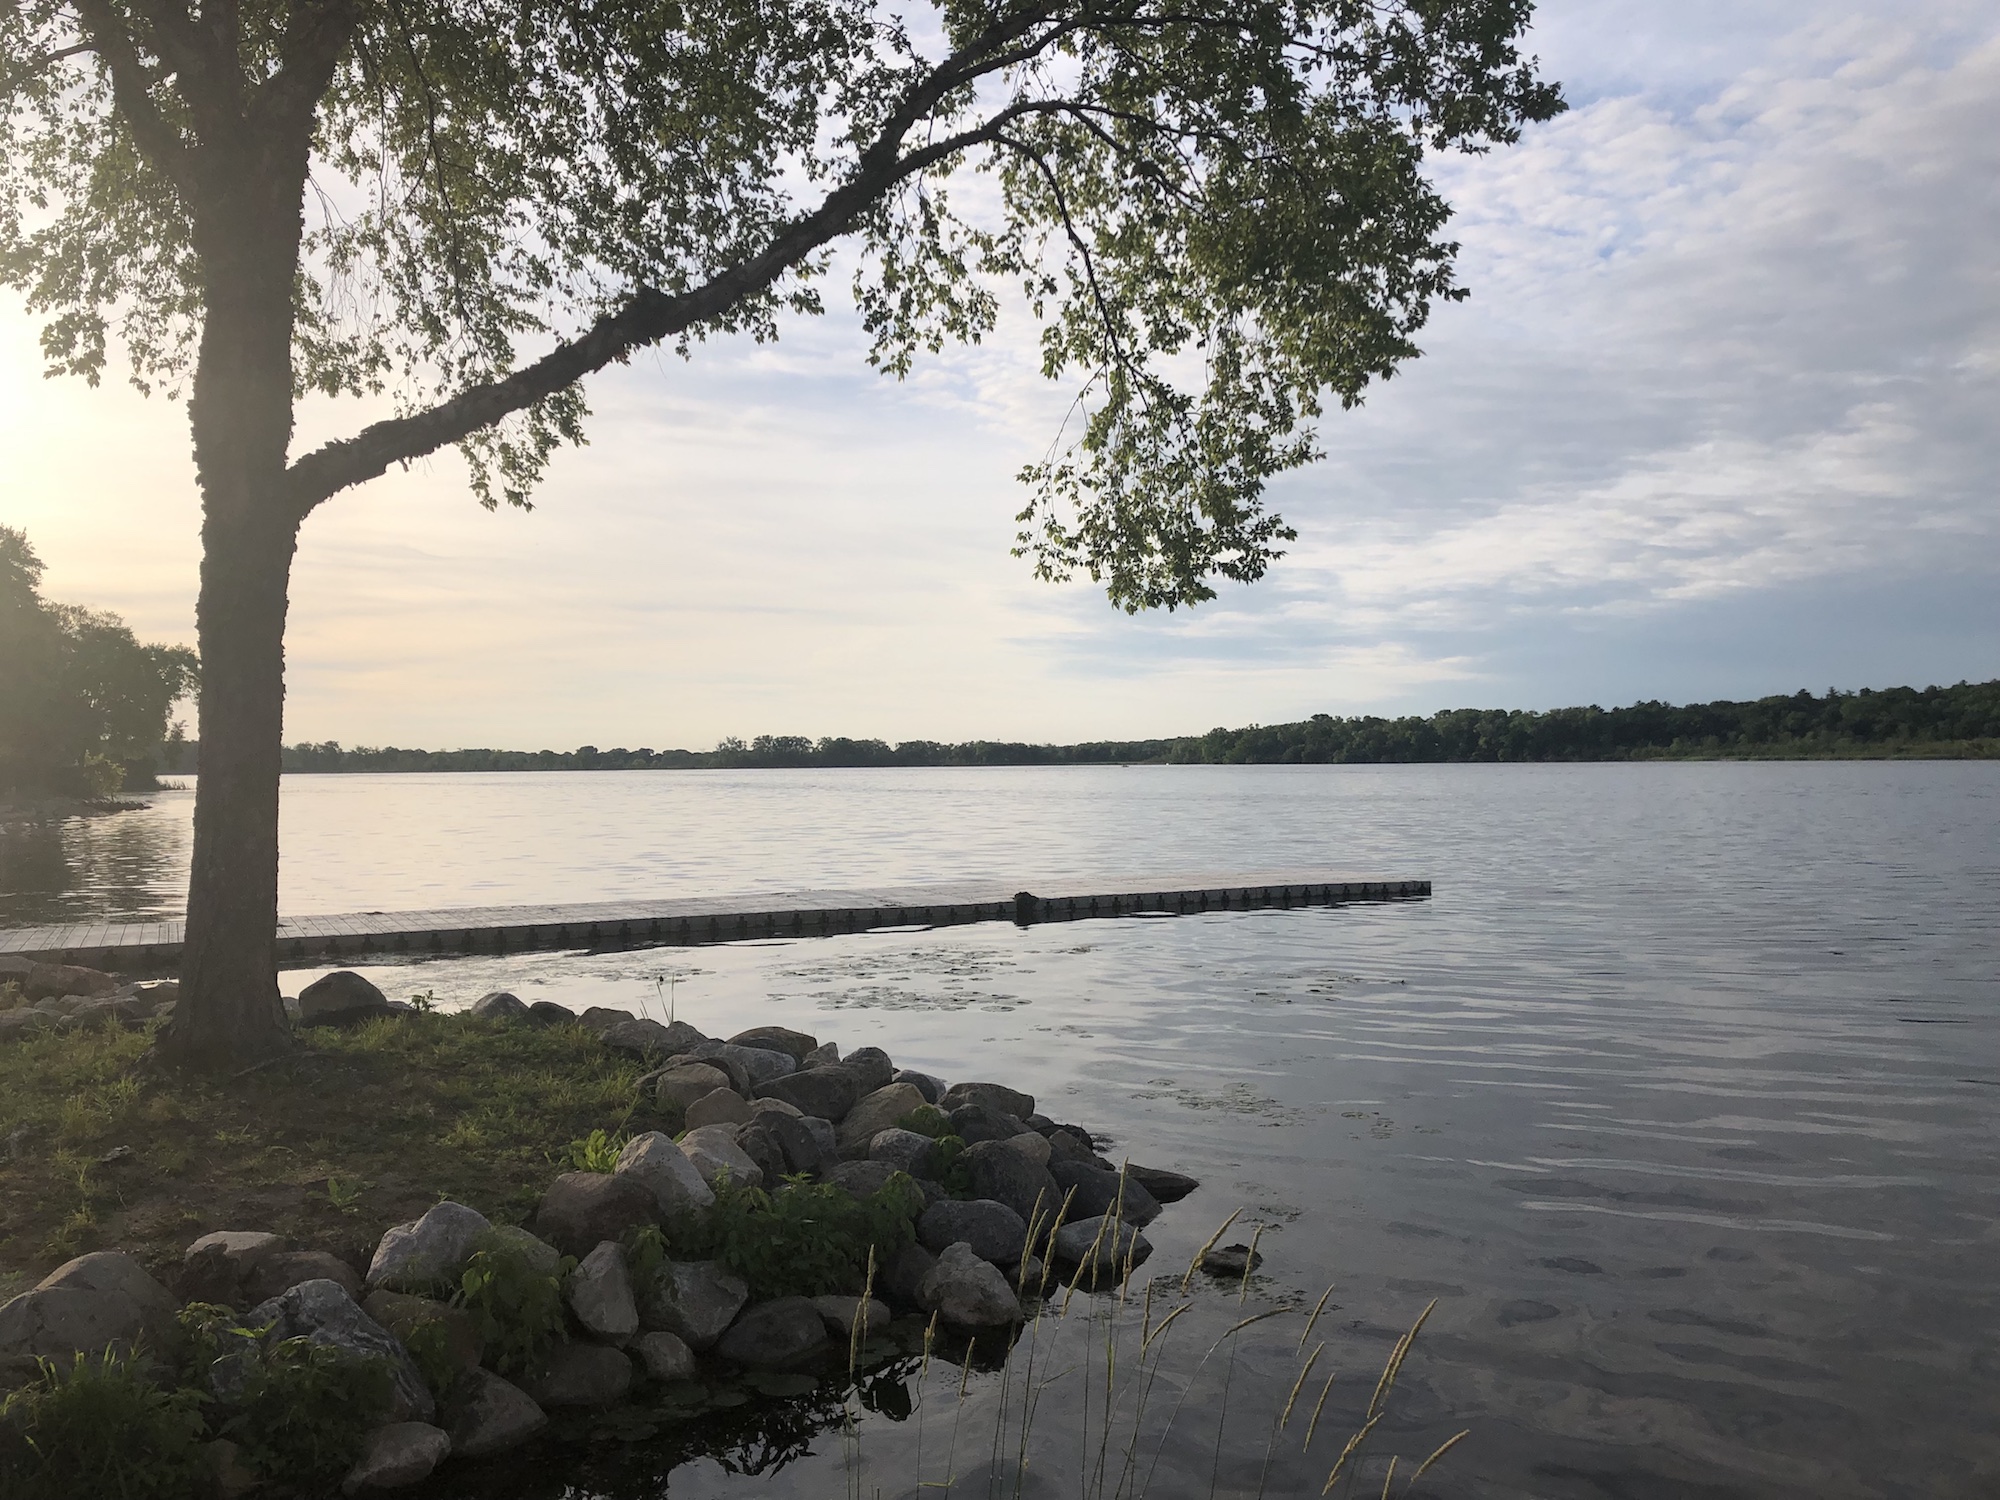 Lake Wingra on June 22, 2019.